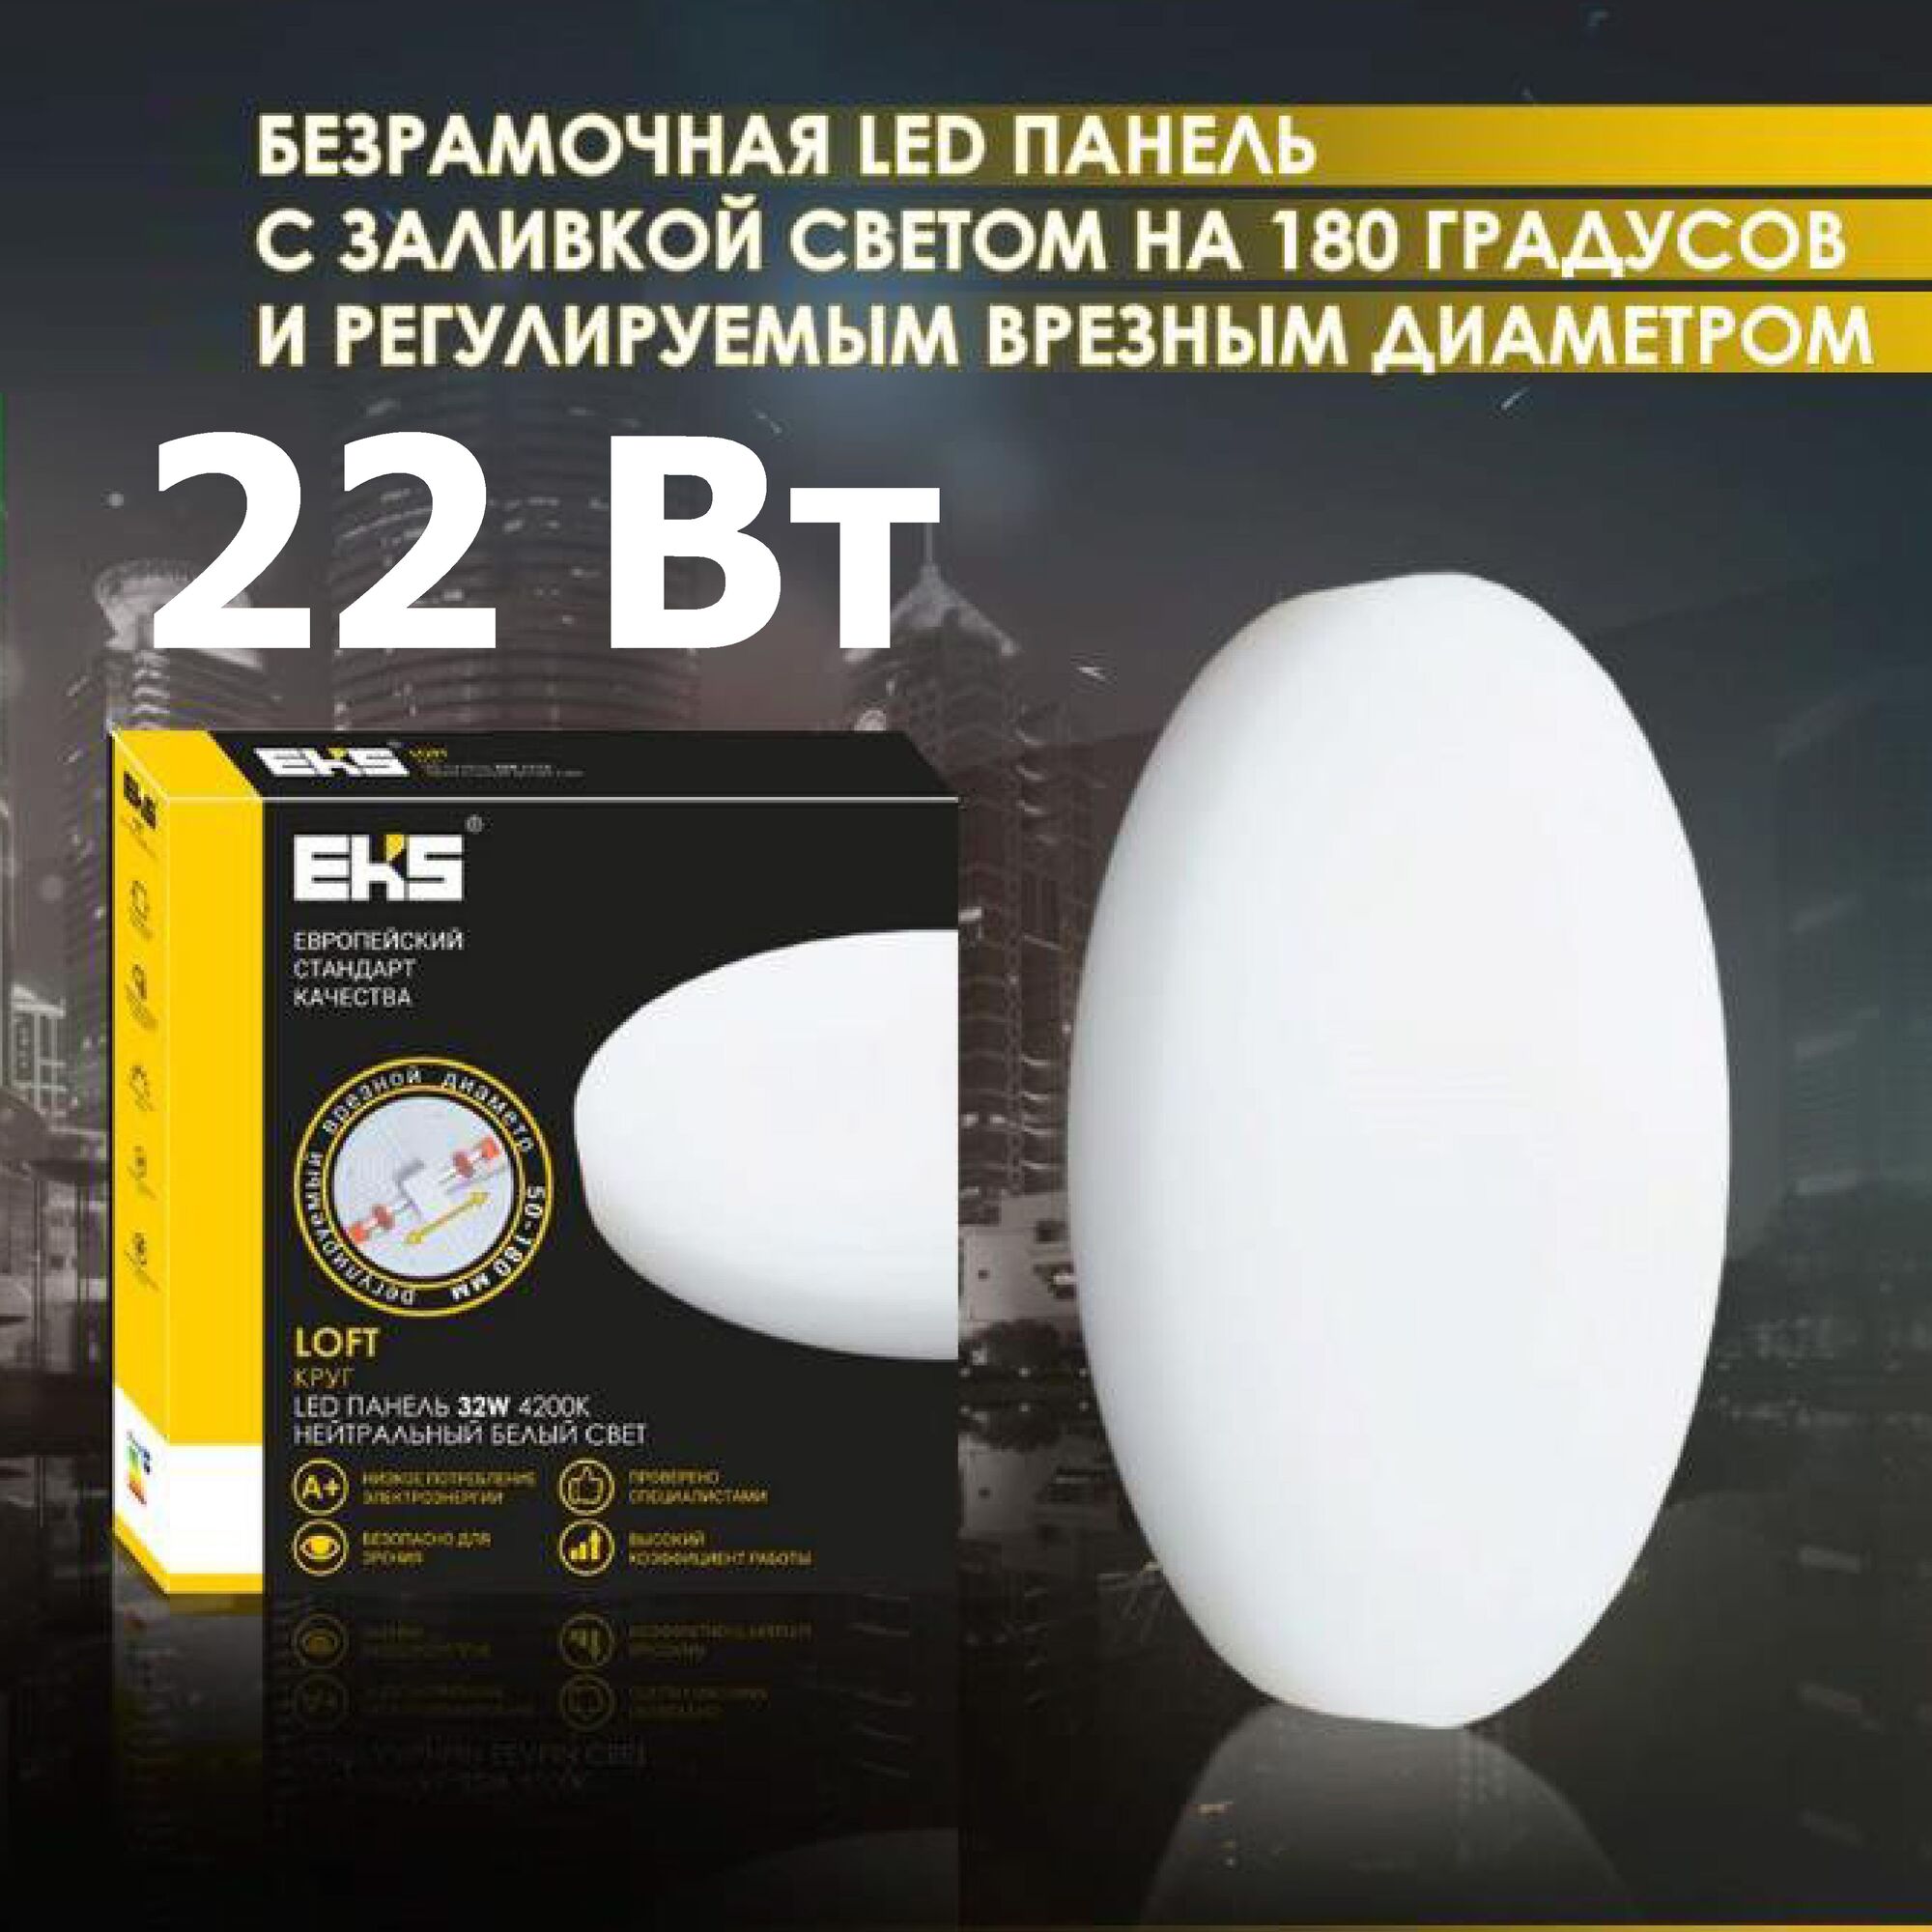 LED панель LOFT КРУГ , 22W, 4200K, 2000ЛМ, D170*50-130*40